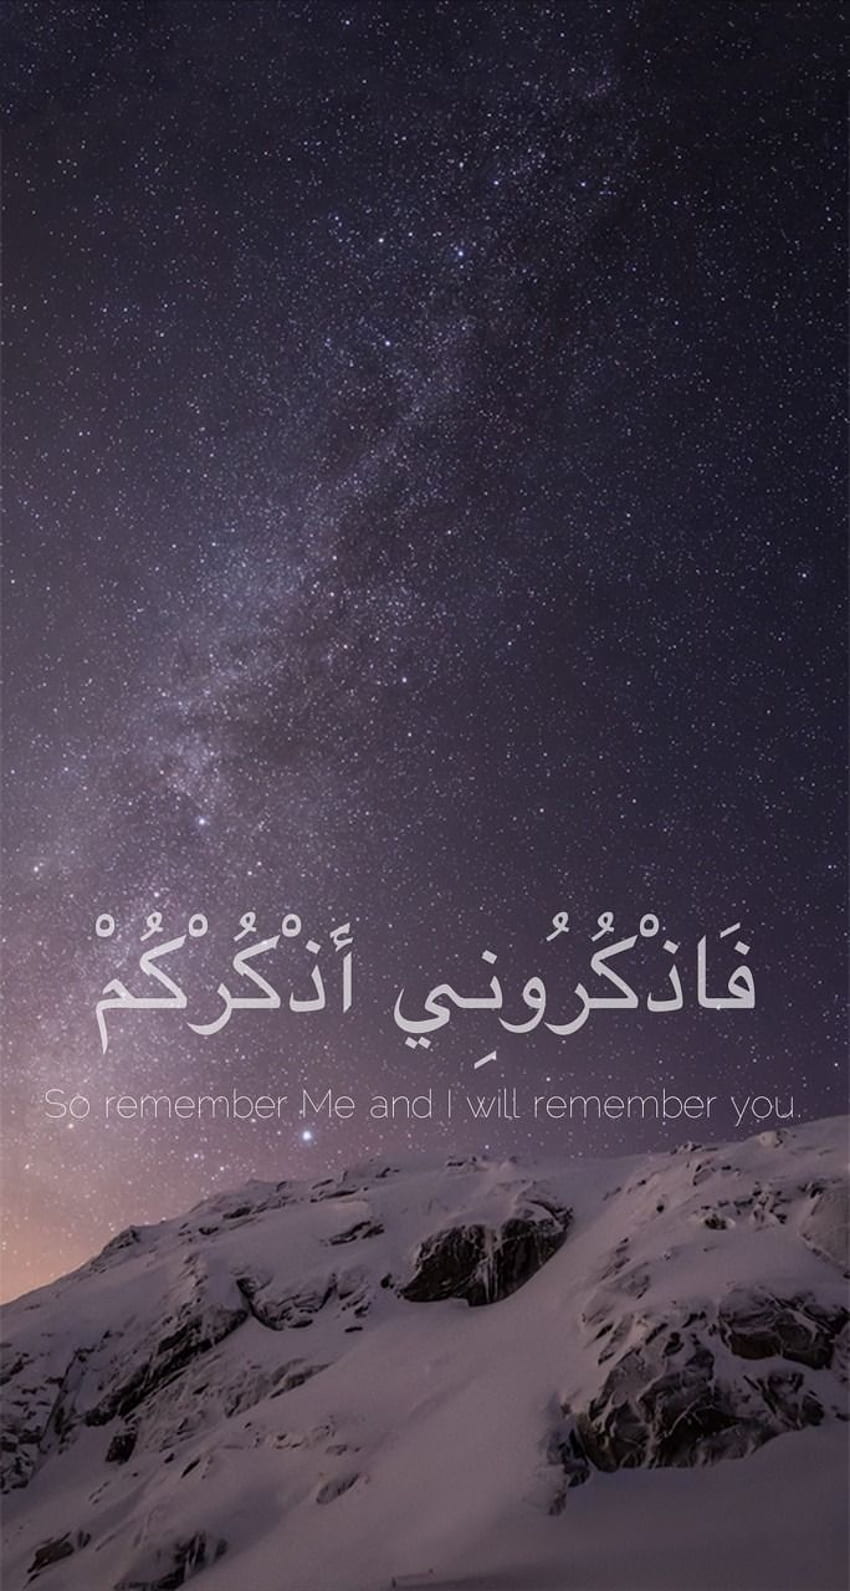 ﷽ Islam - Some Islamic iPhone background I made HD phone wallpaper